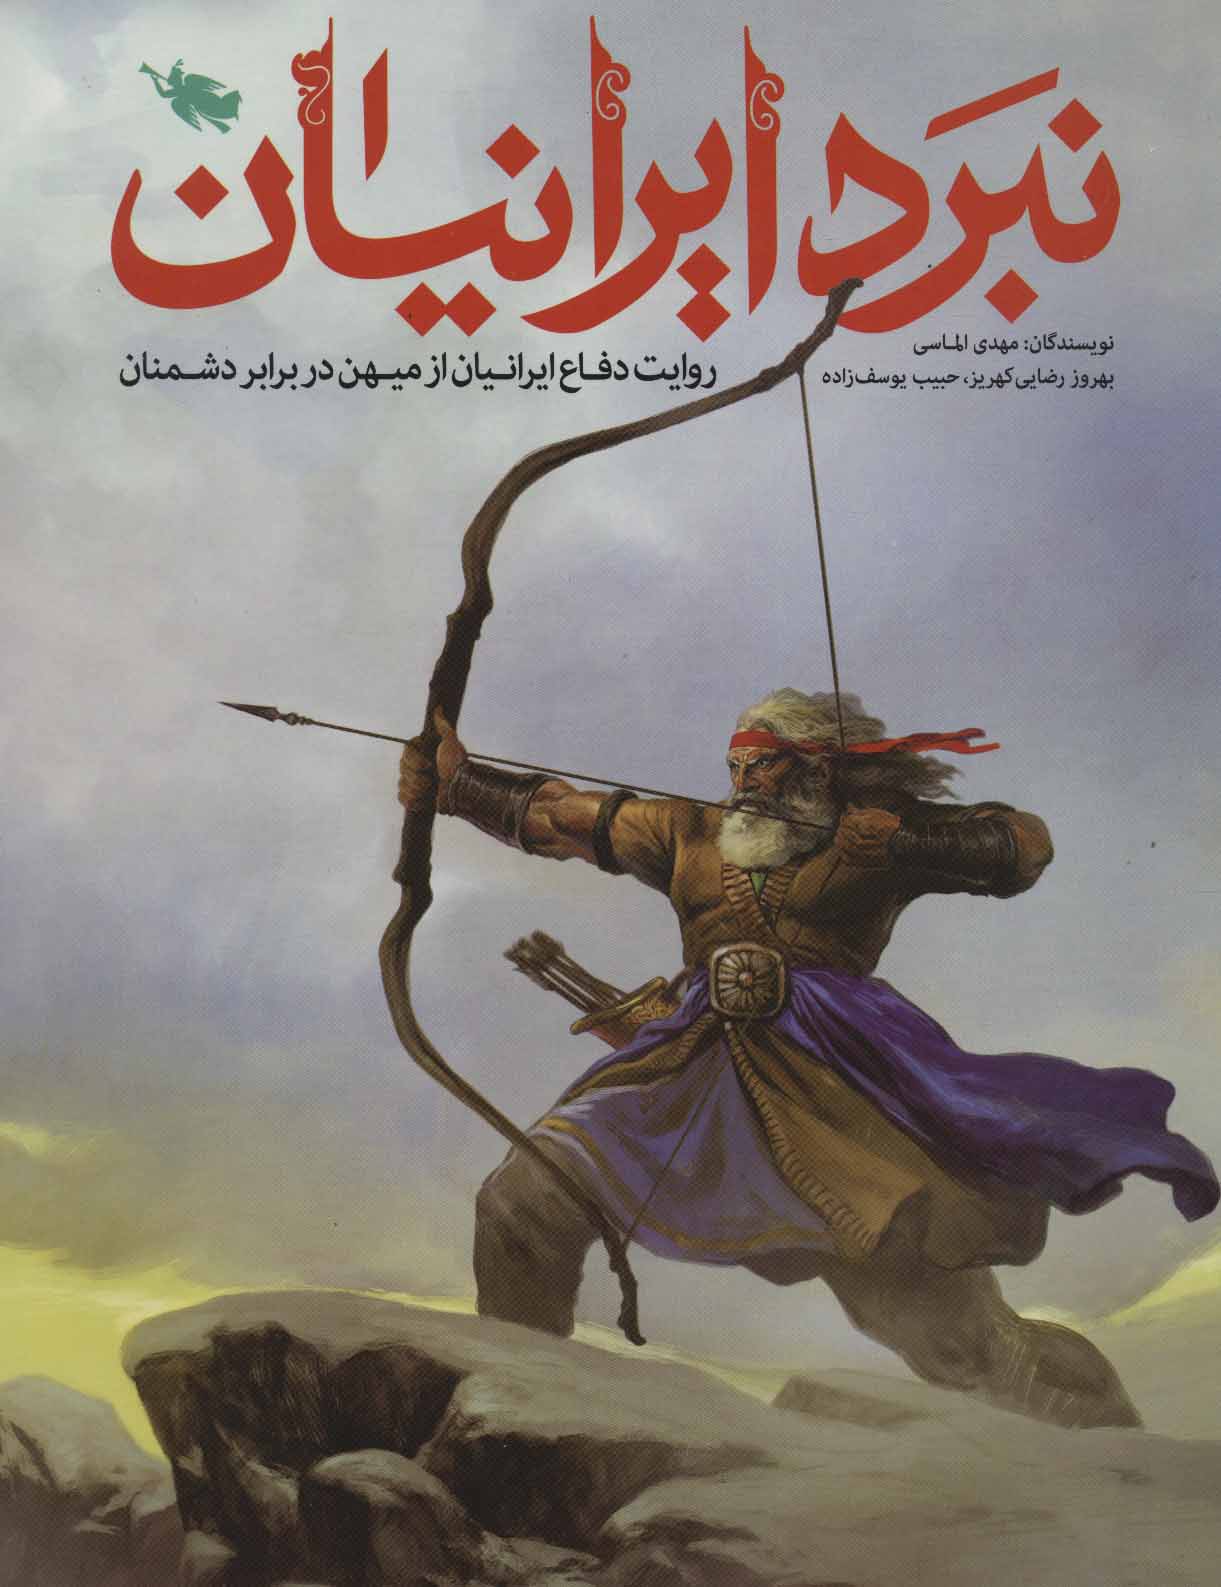 نبرد ایرانیان (روایت دفاع ایرانیان از میهن در برابر دشمنان)،(گلاسه)